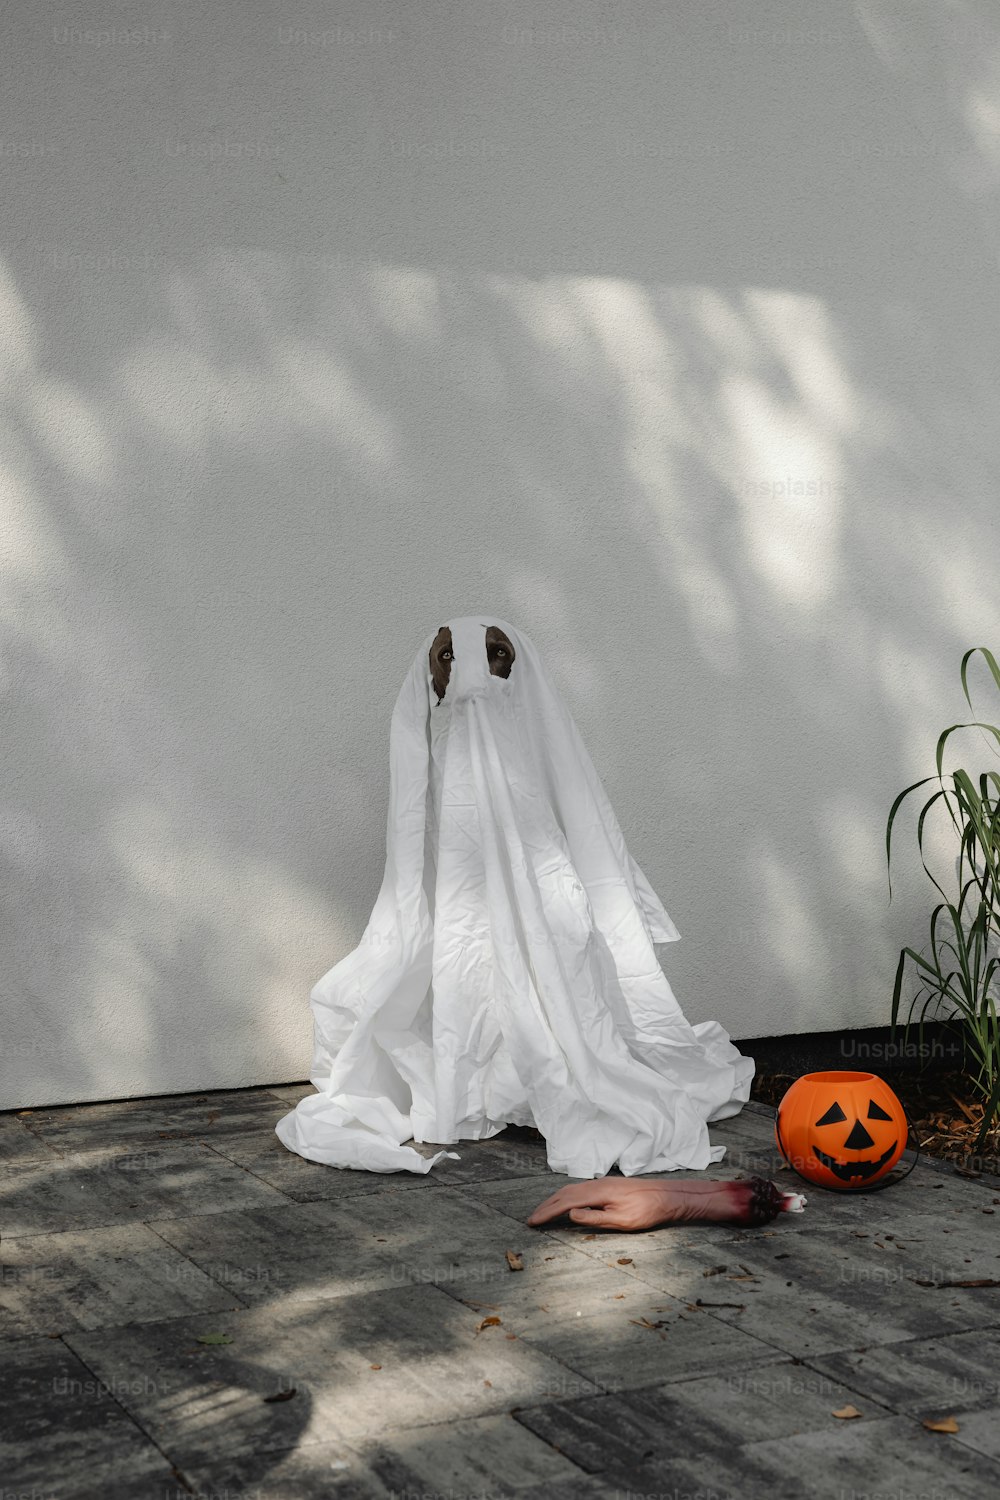 Un fantôme fantomatique assis sur le sol à côté d’une citrouille